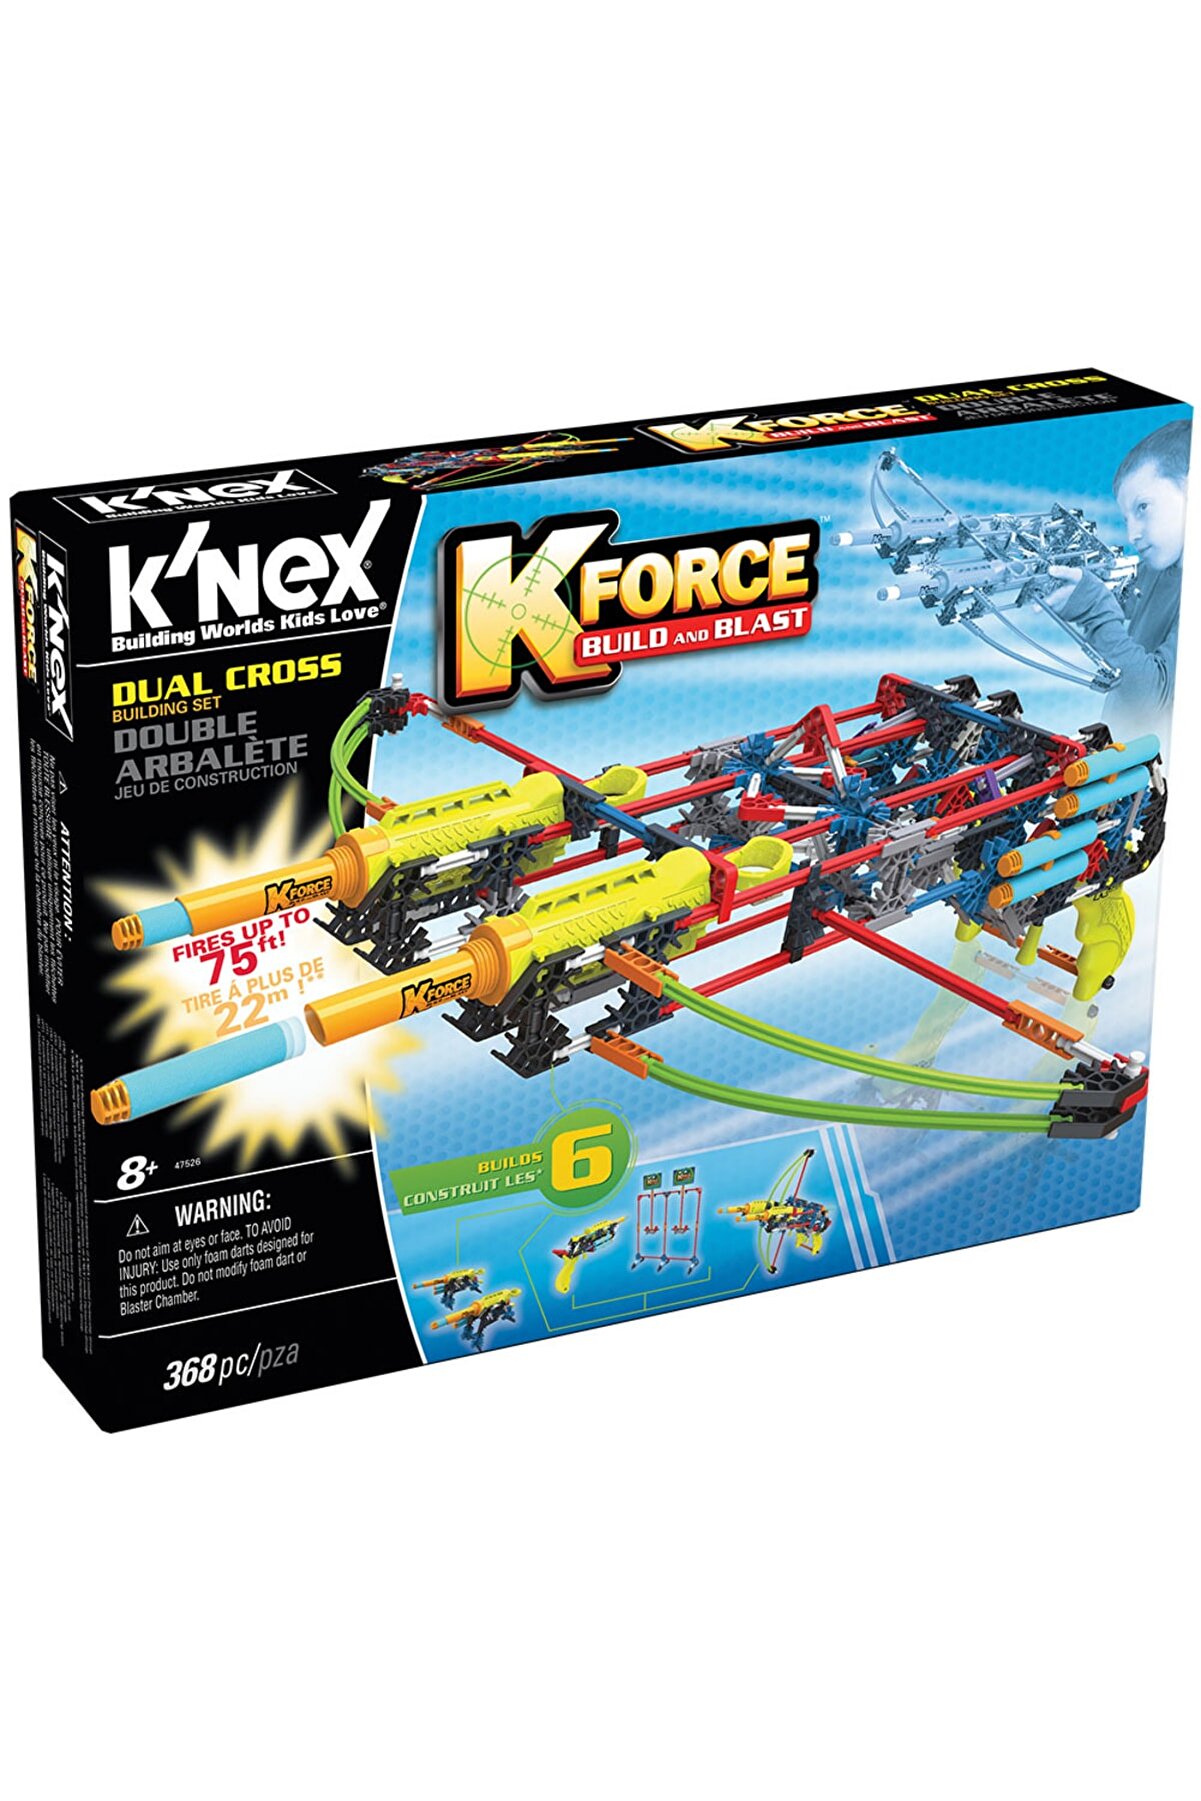 Knex K Nex K-force Dual Cross Yapı Seti 47526